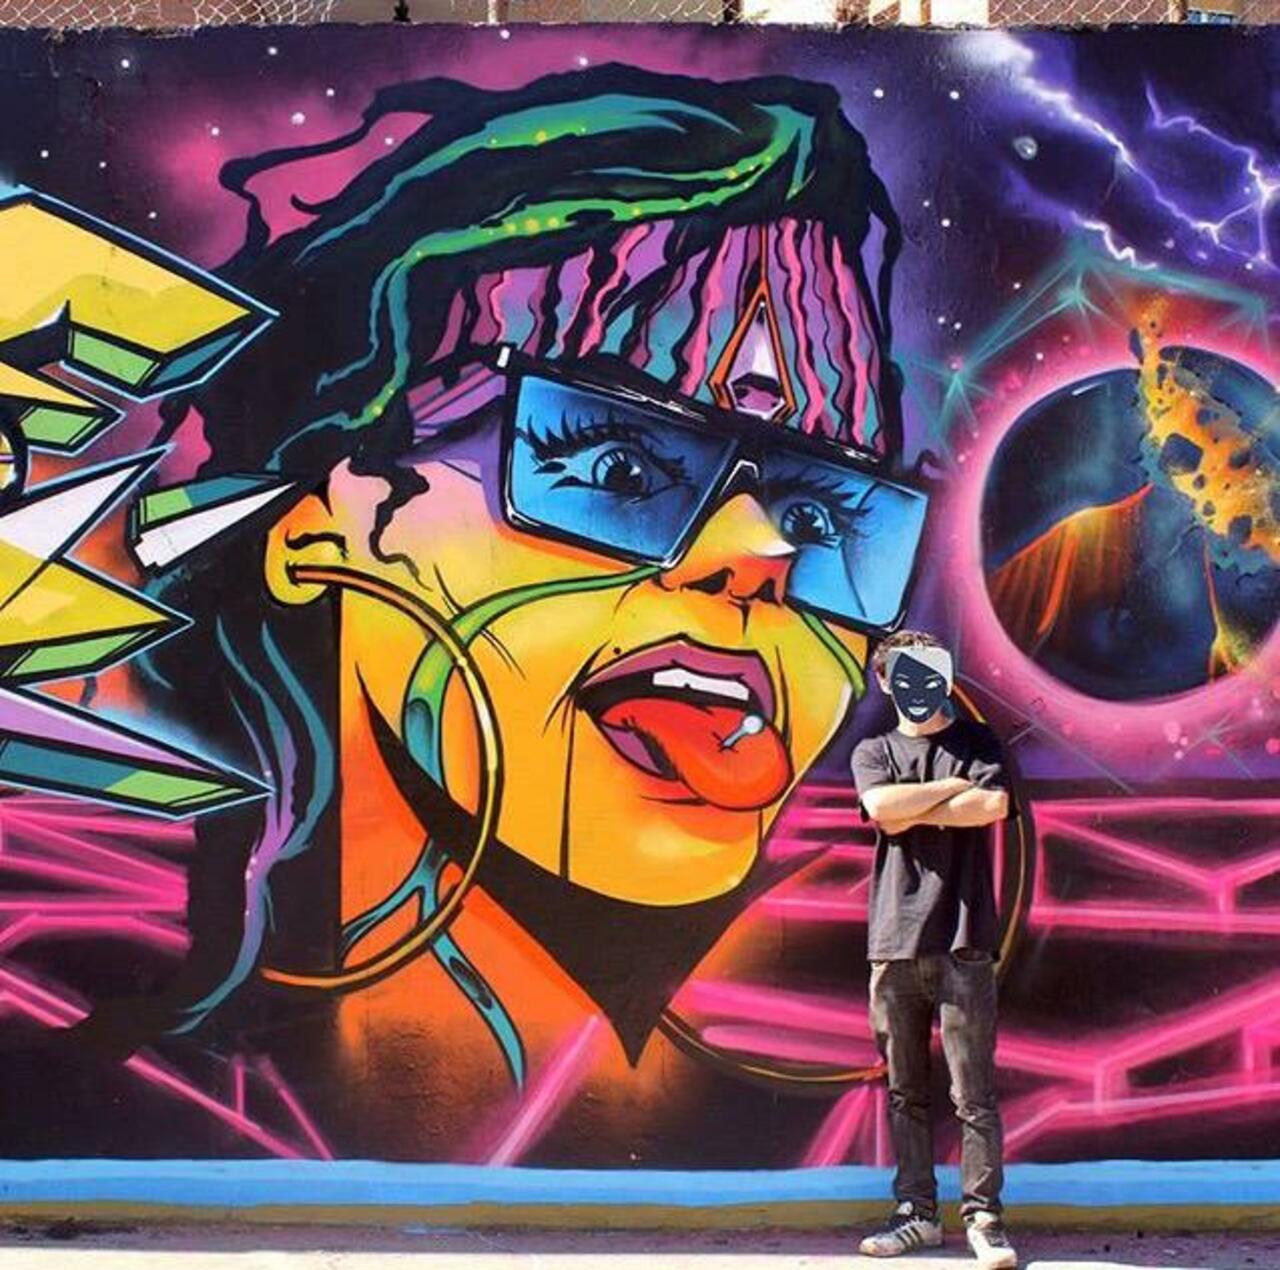 Brilliant new Street Art by the artist Jaycaes

#art #graffiti #mural #streetart http://t.co/zNd0VKw0iV